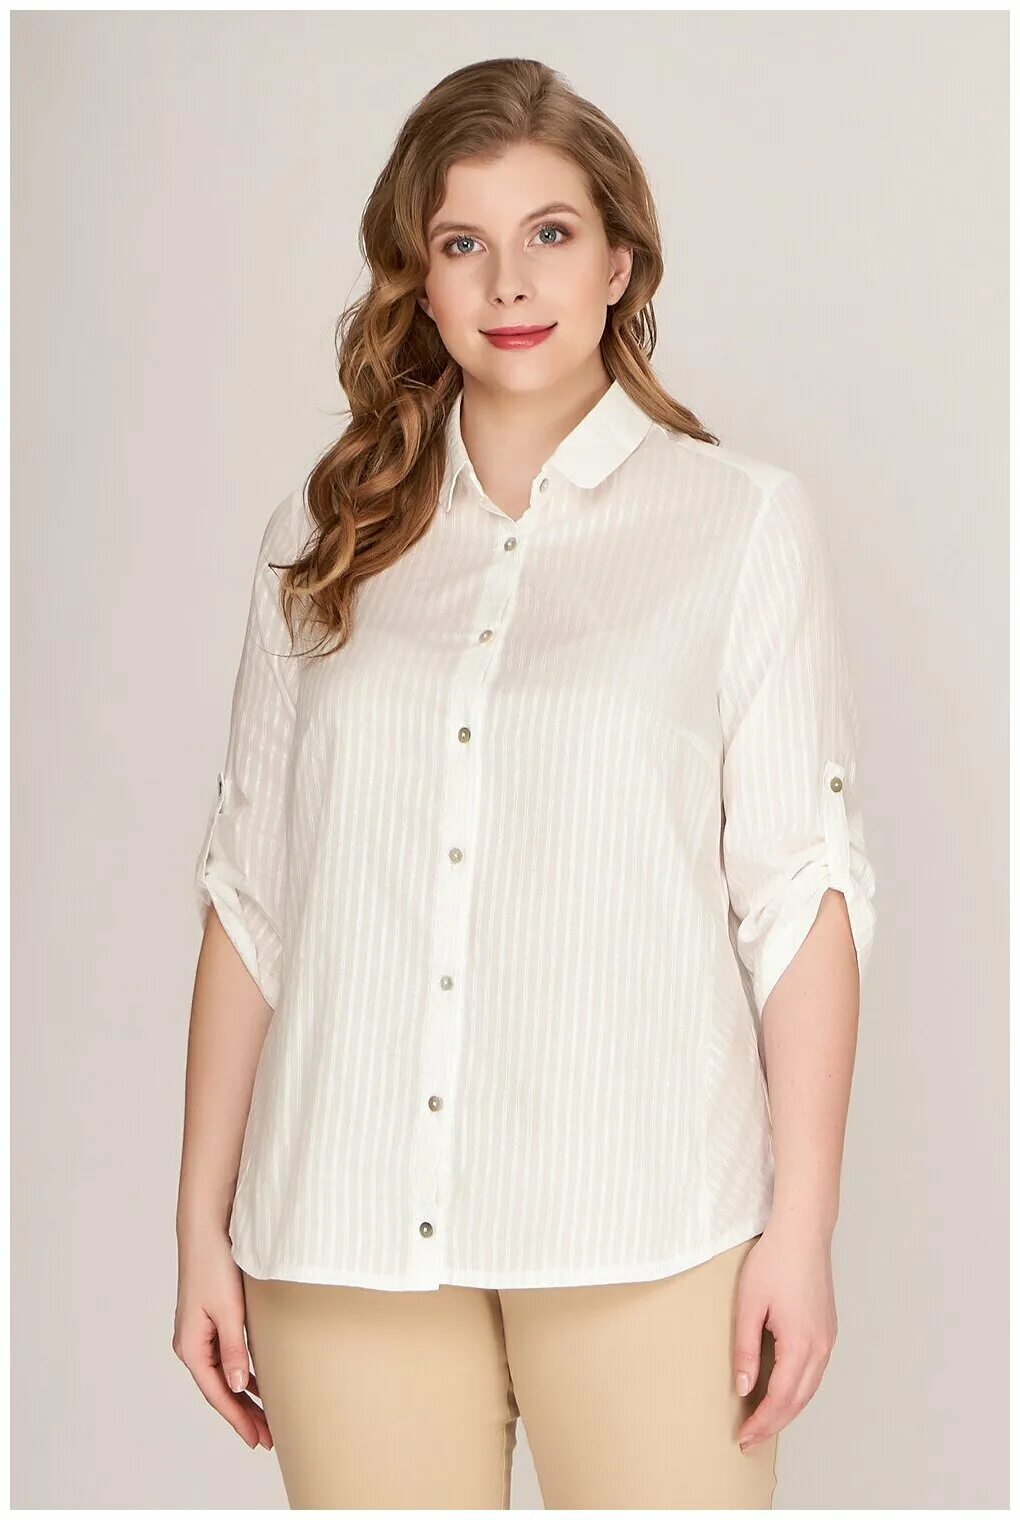 Блуза 41255 Lina. Женщина в блузке. Белые блузки для полных. Блузки для полных женщин. Озон белая блузка